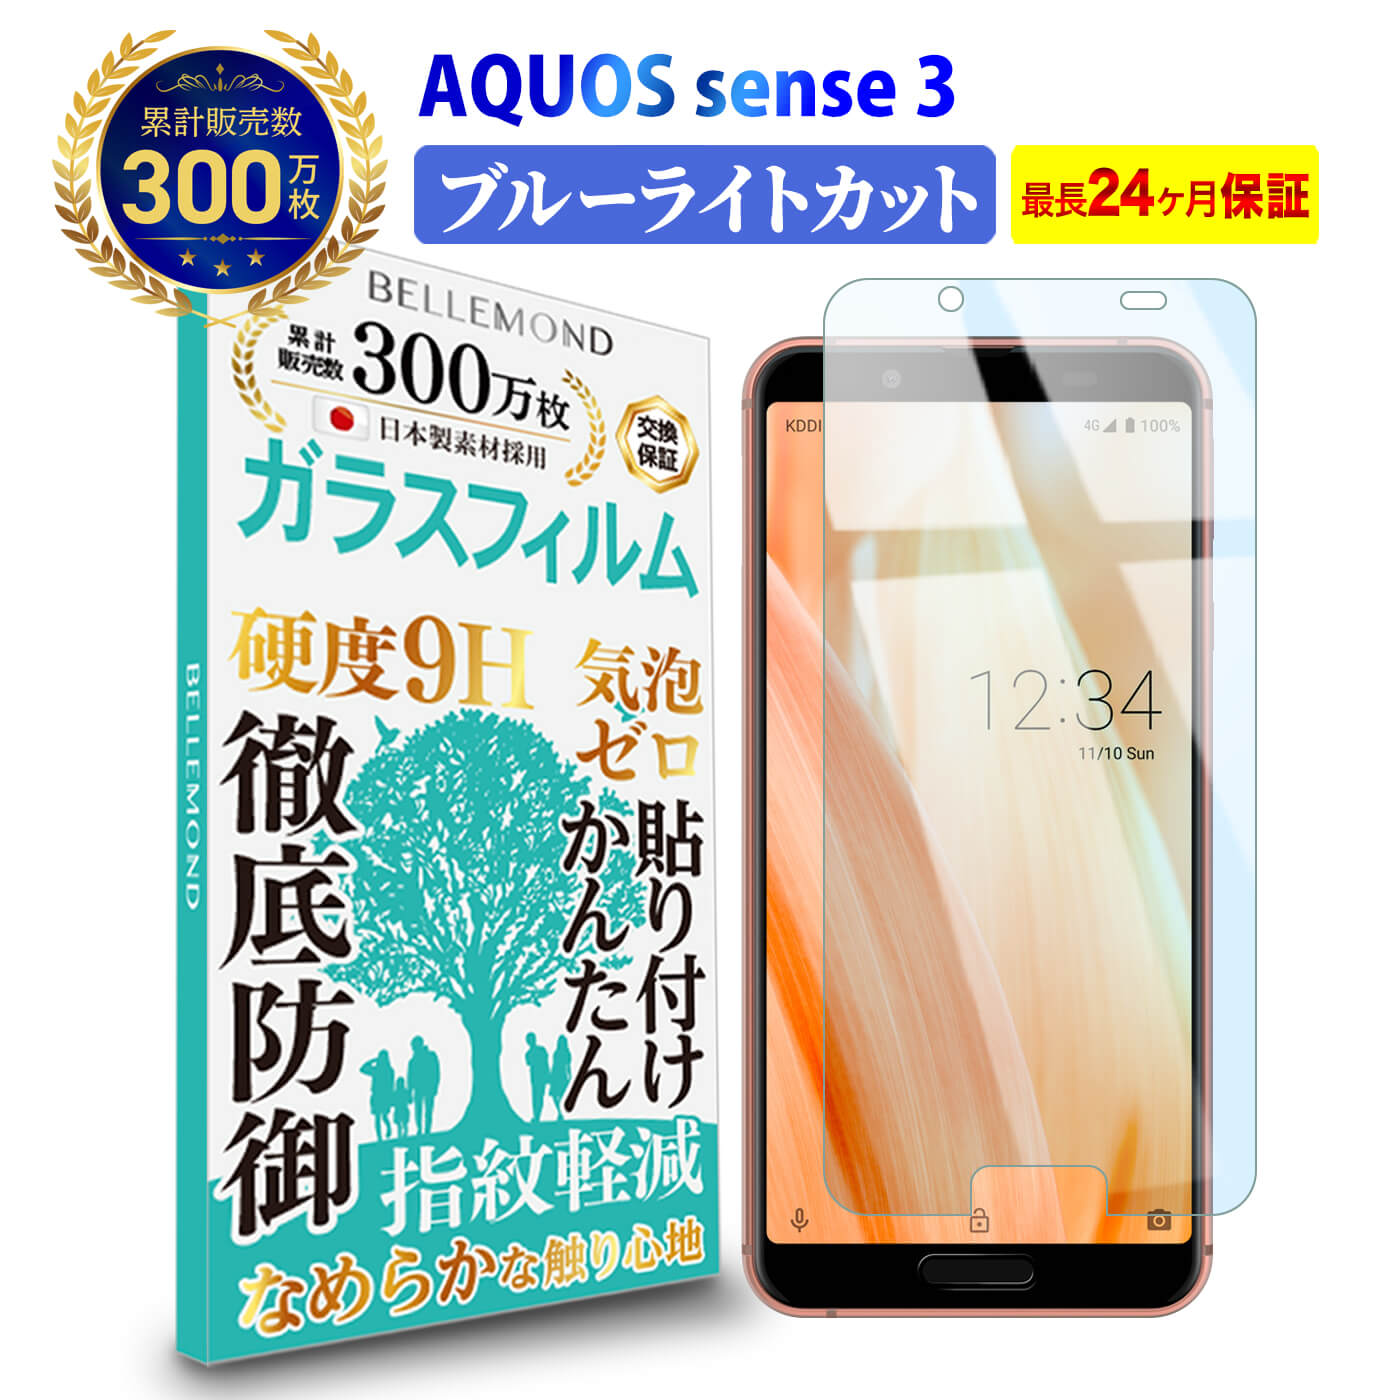 【長期無料保証付き】 AQUOS sense 3 ガ